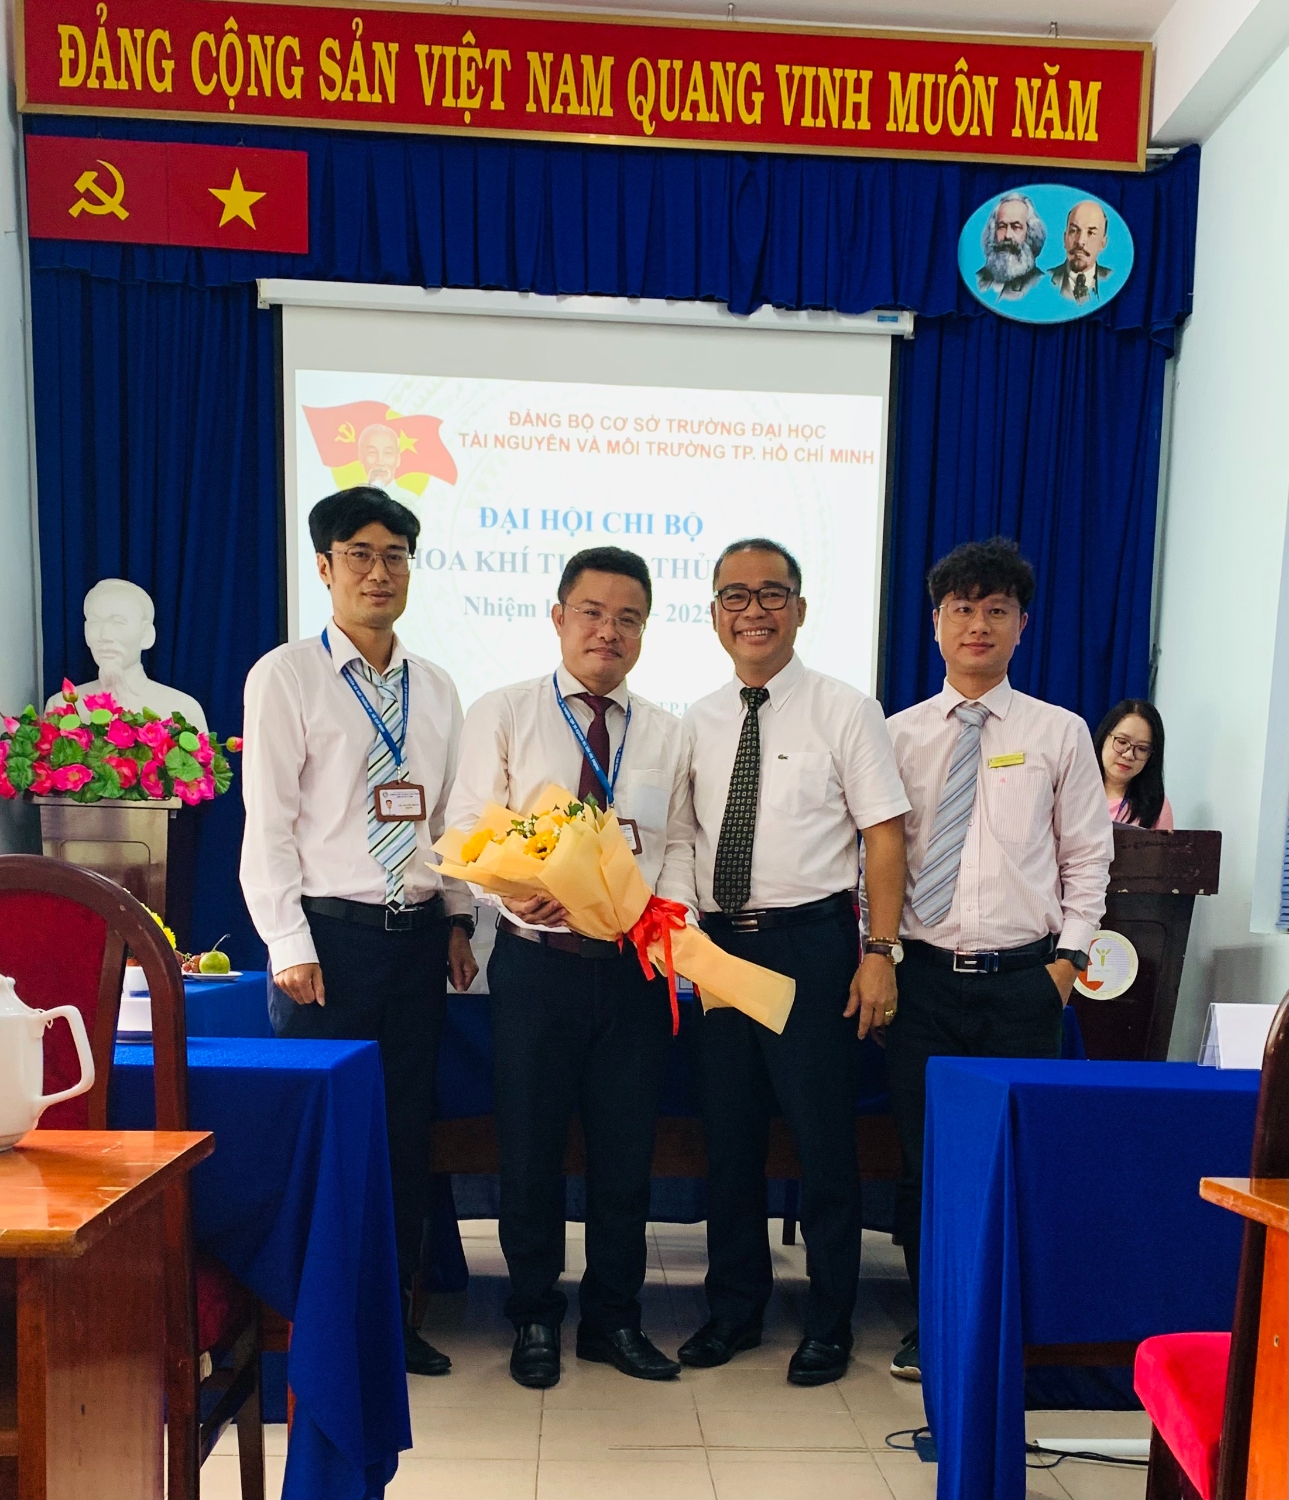 Hình 5: Đ/c Huỳnh Quyền – Phó Bí thư Đảng ủy, Hiệu trưởng nhà trường tặng hoa chúc mừng Chi ủy nhiệm kỳ 2022-2025